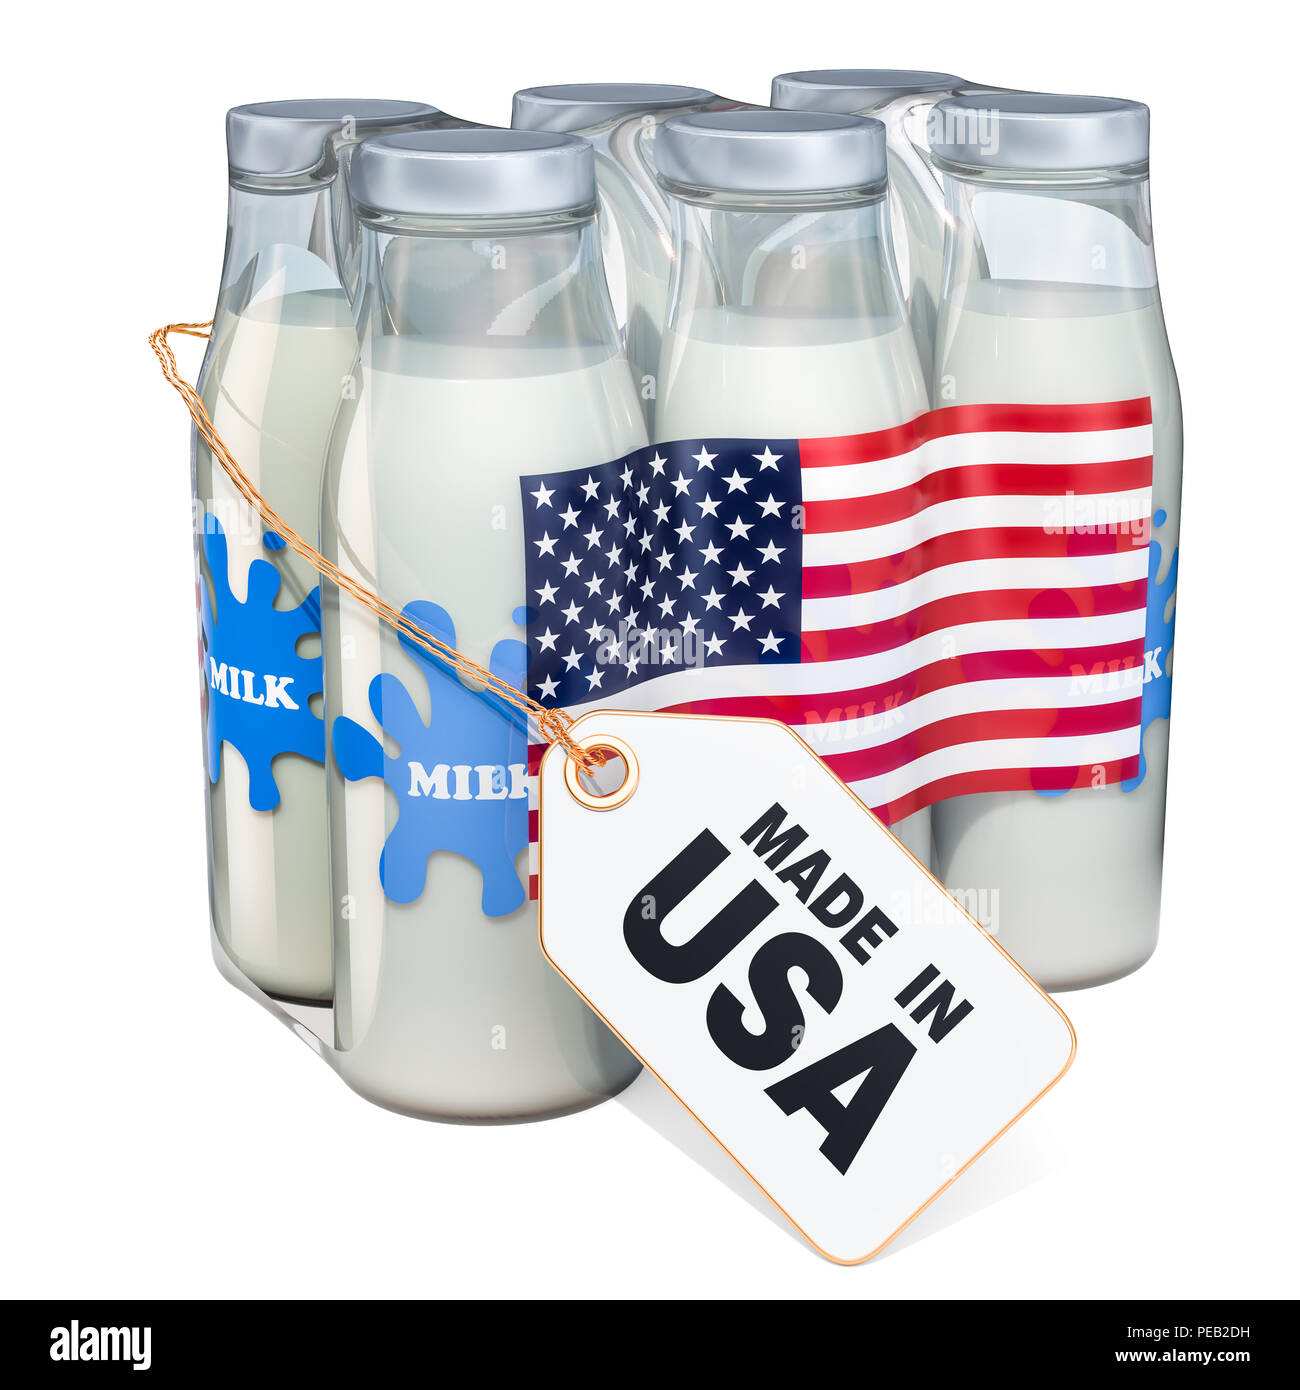 Dairy drink dal concetto di Stati Uniti d'America. Pacchetto di vetro bottiglie di latte con il tag label made in USA, rendering 3D isolati su sfondo bianco Foto Stock